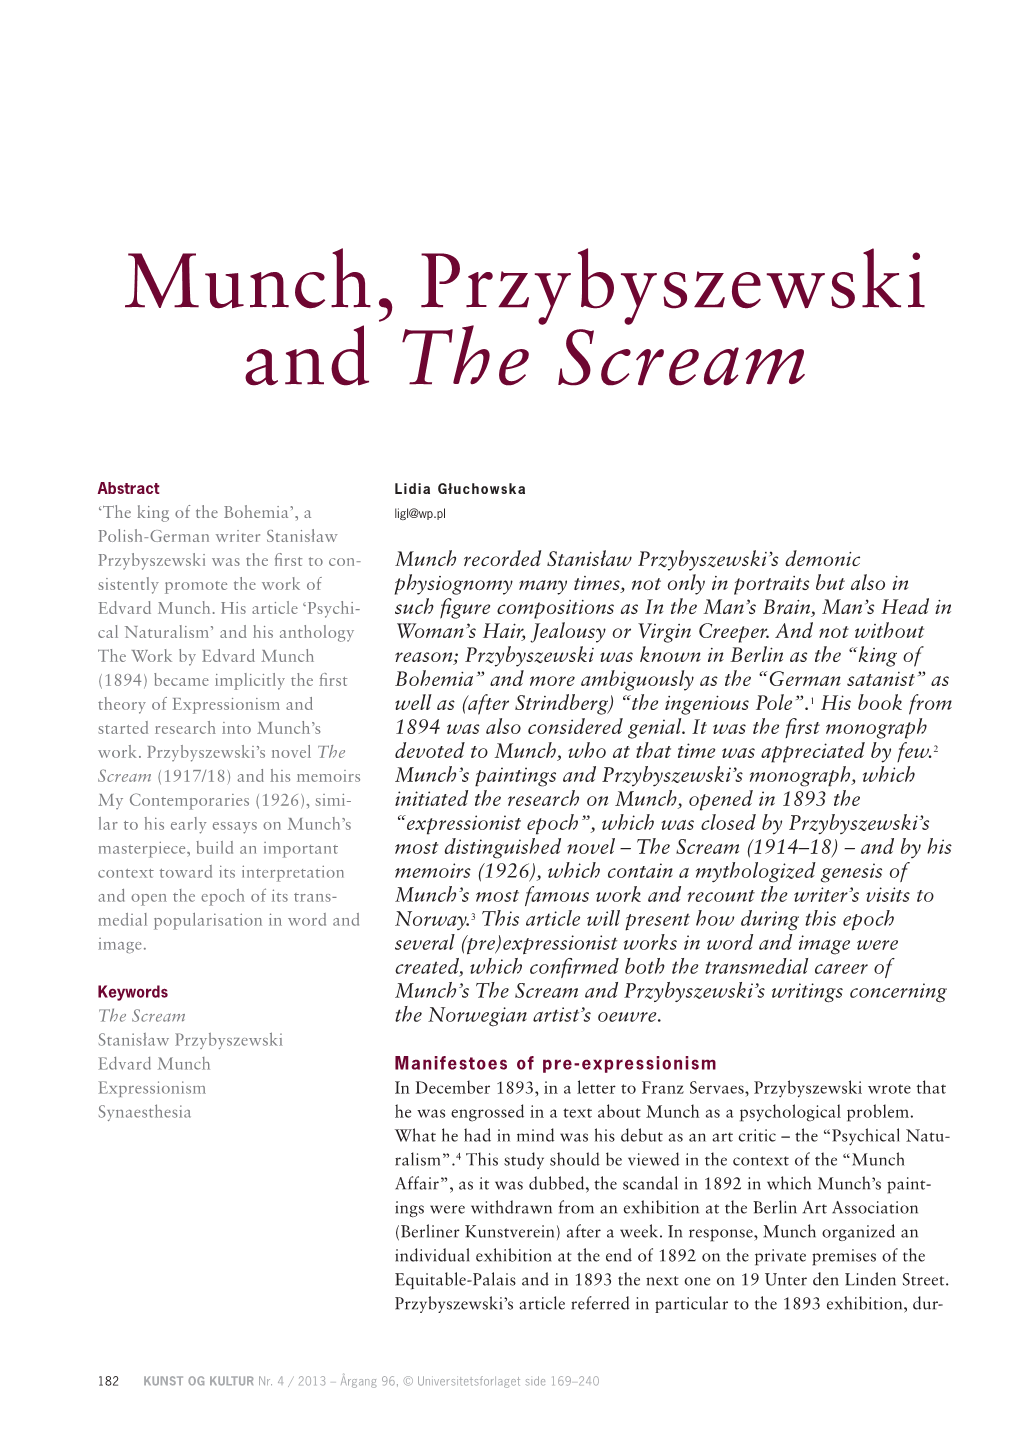 Munch, Przybyszewski and the Scream